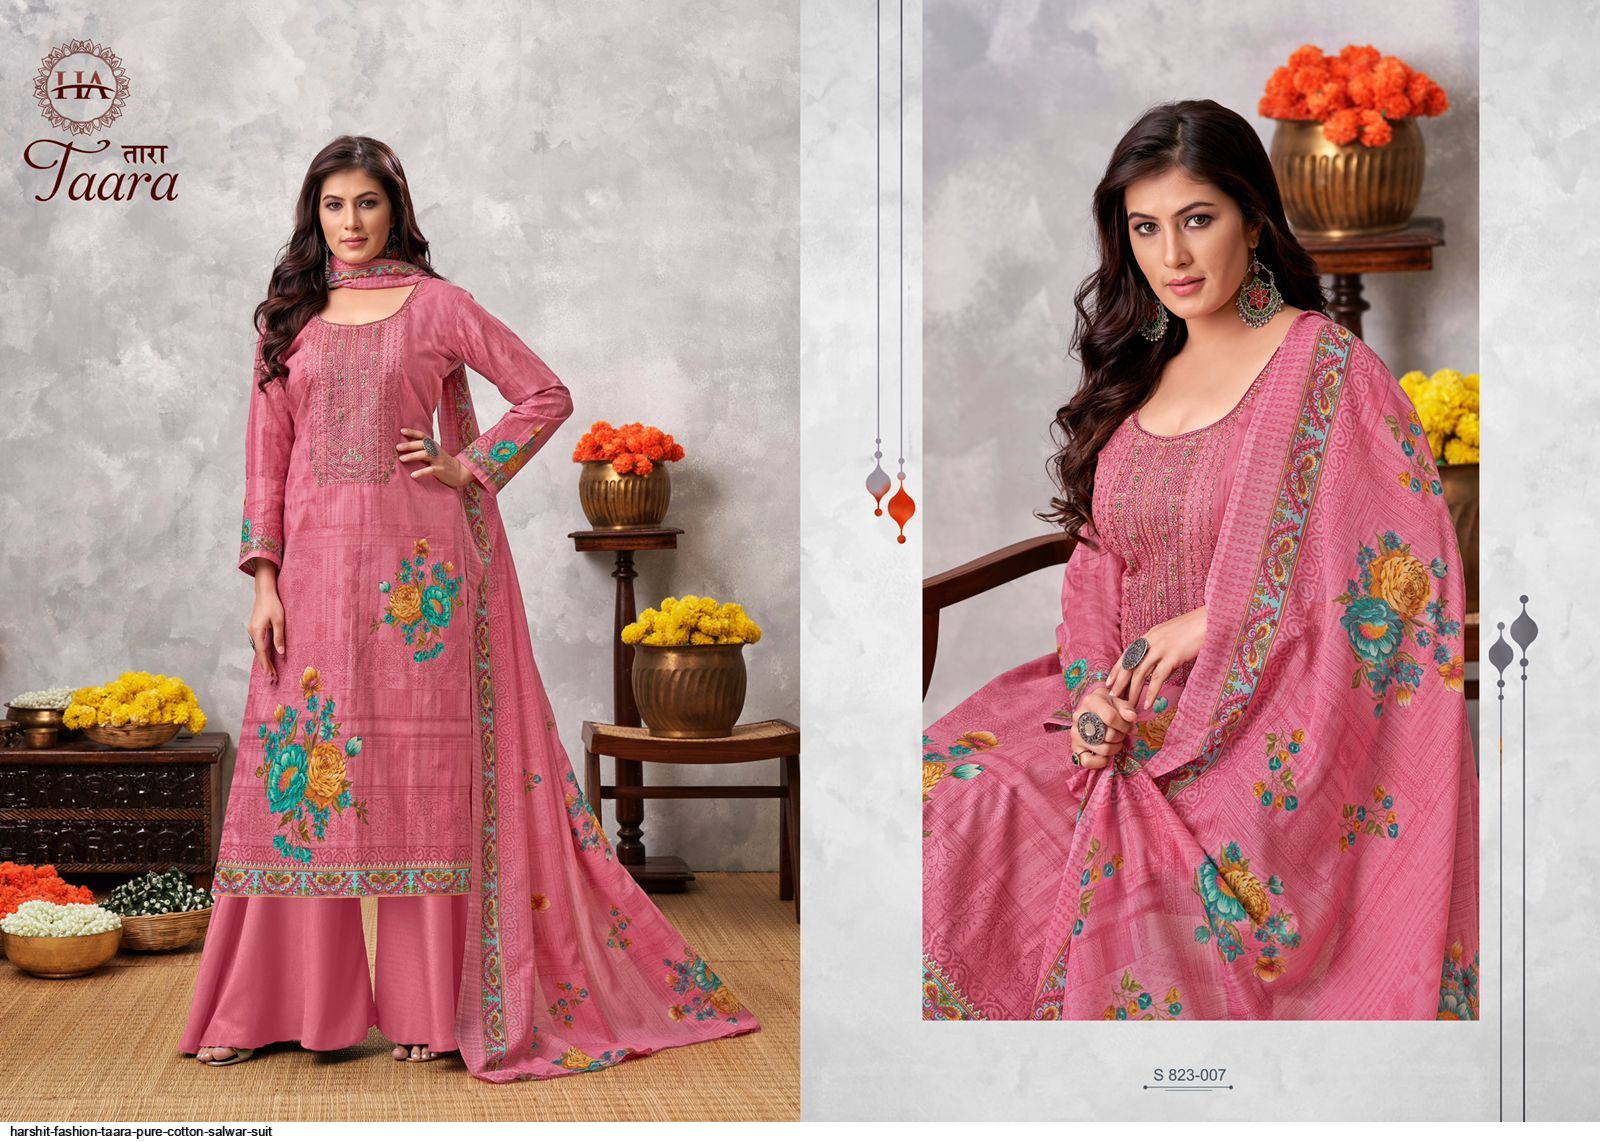 Harshit Taara Vol 3 Pure Cotton Digital Printed Designer Dress Material  Catalog